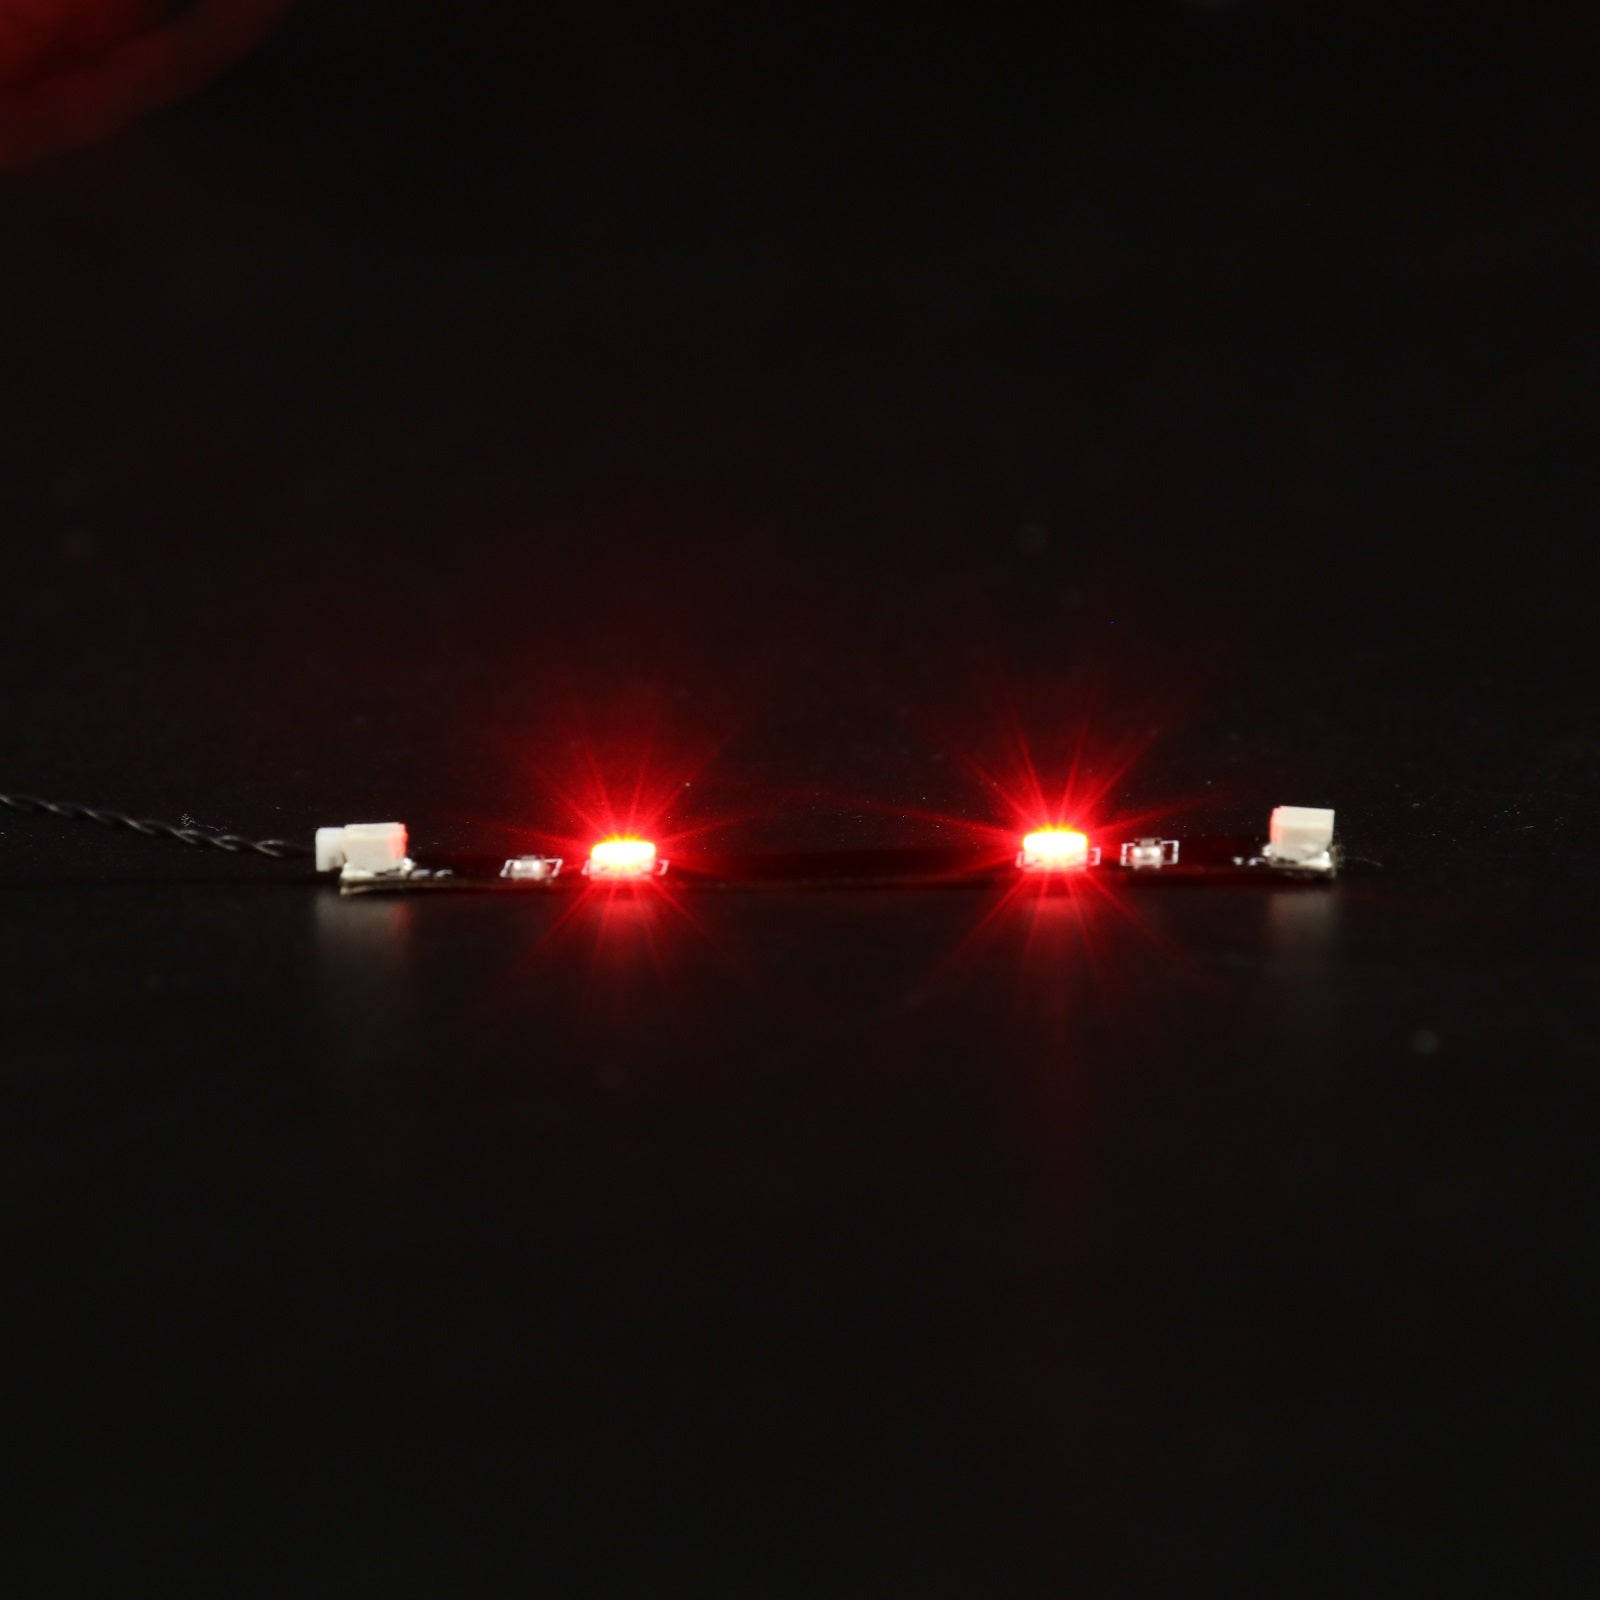 BrickBling LED-Lichtleisten-Zubehör für LEGO DIY-Baustein-Beleuchtungsteil